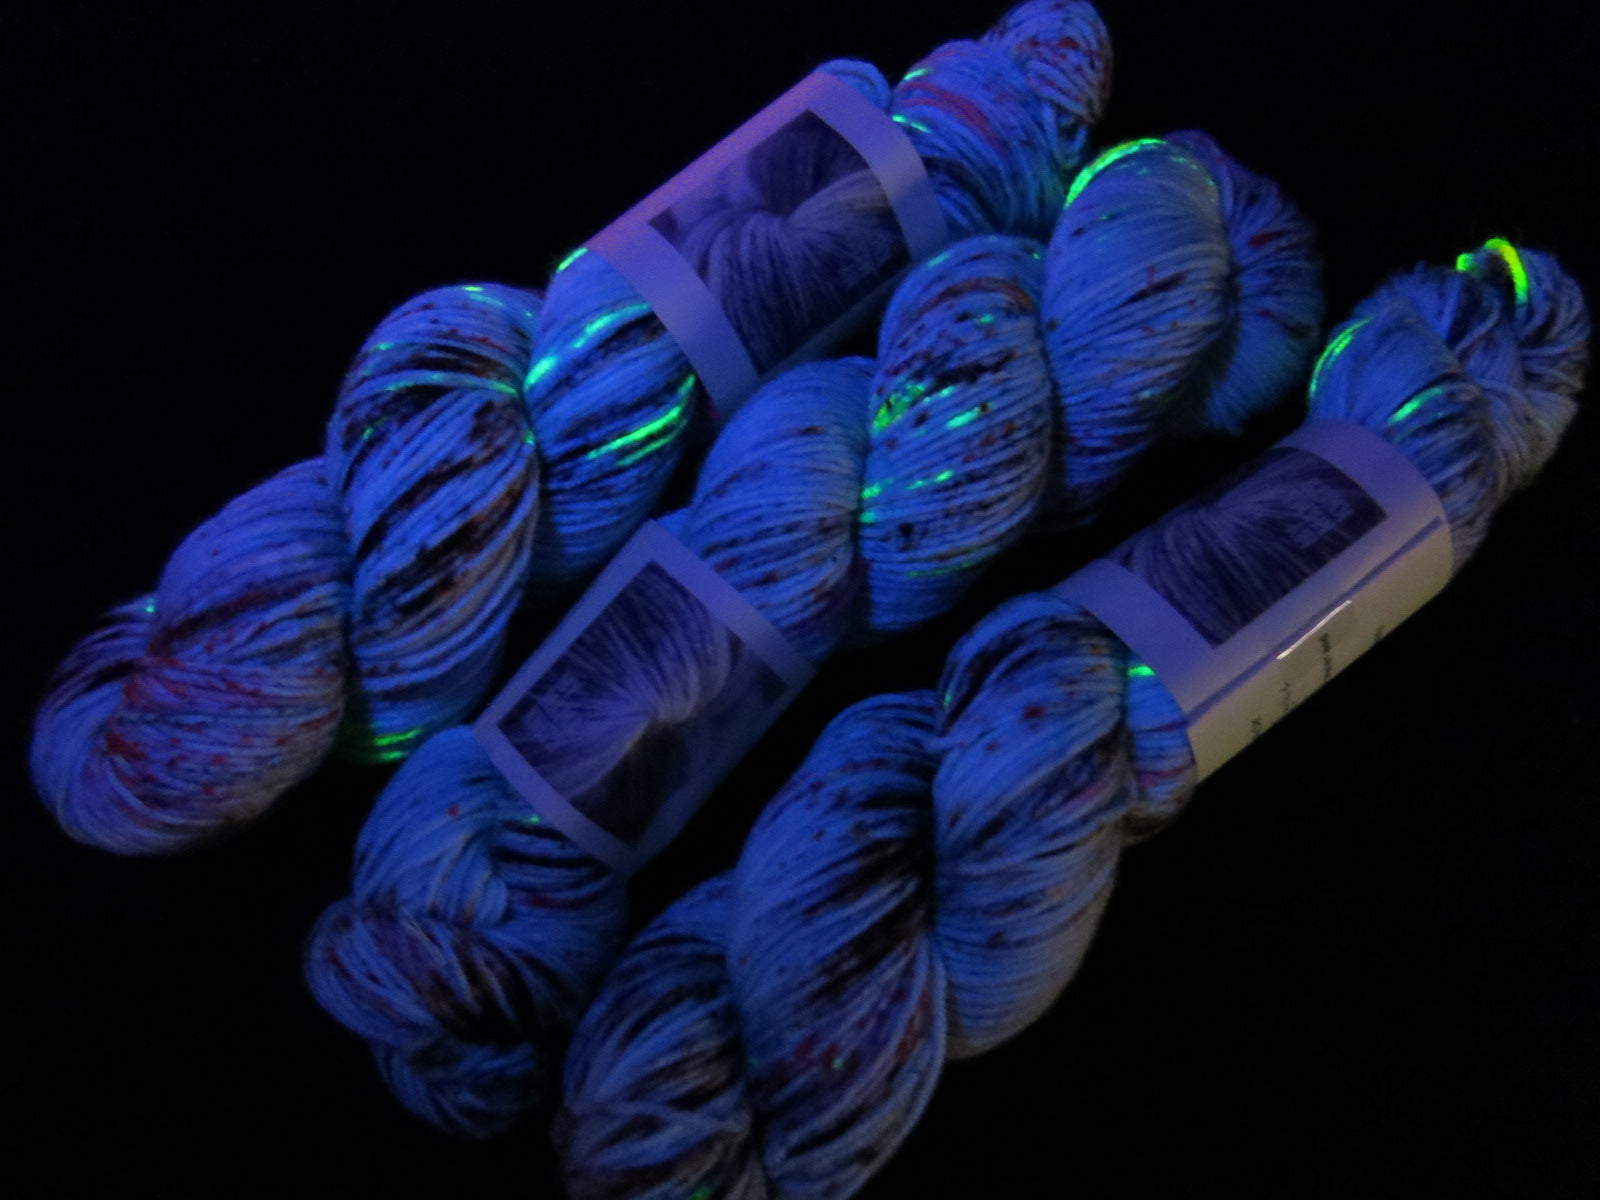 uv reactive yarn fluorescing under black light